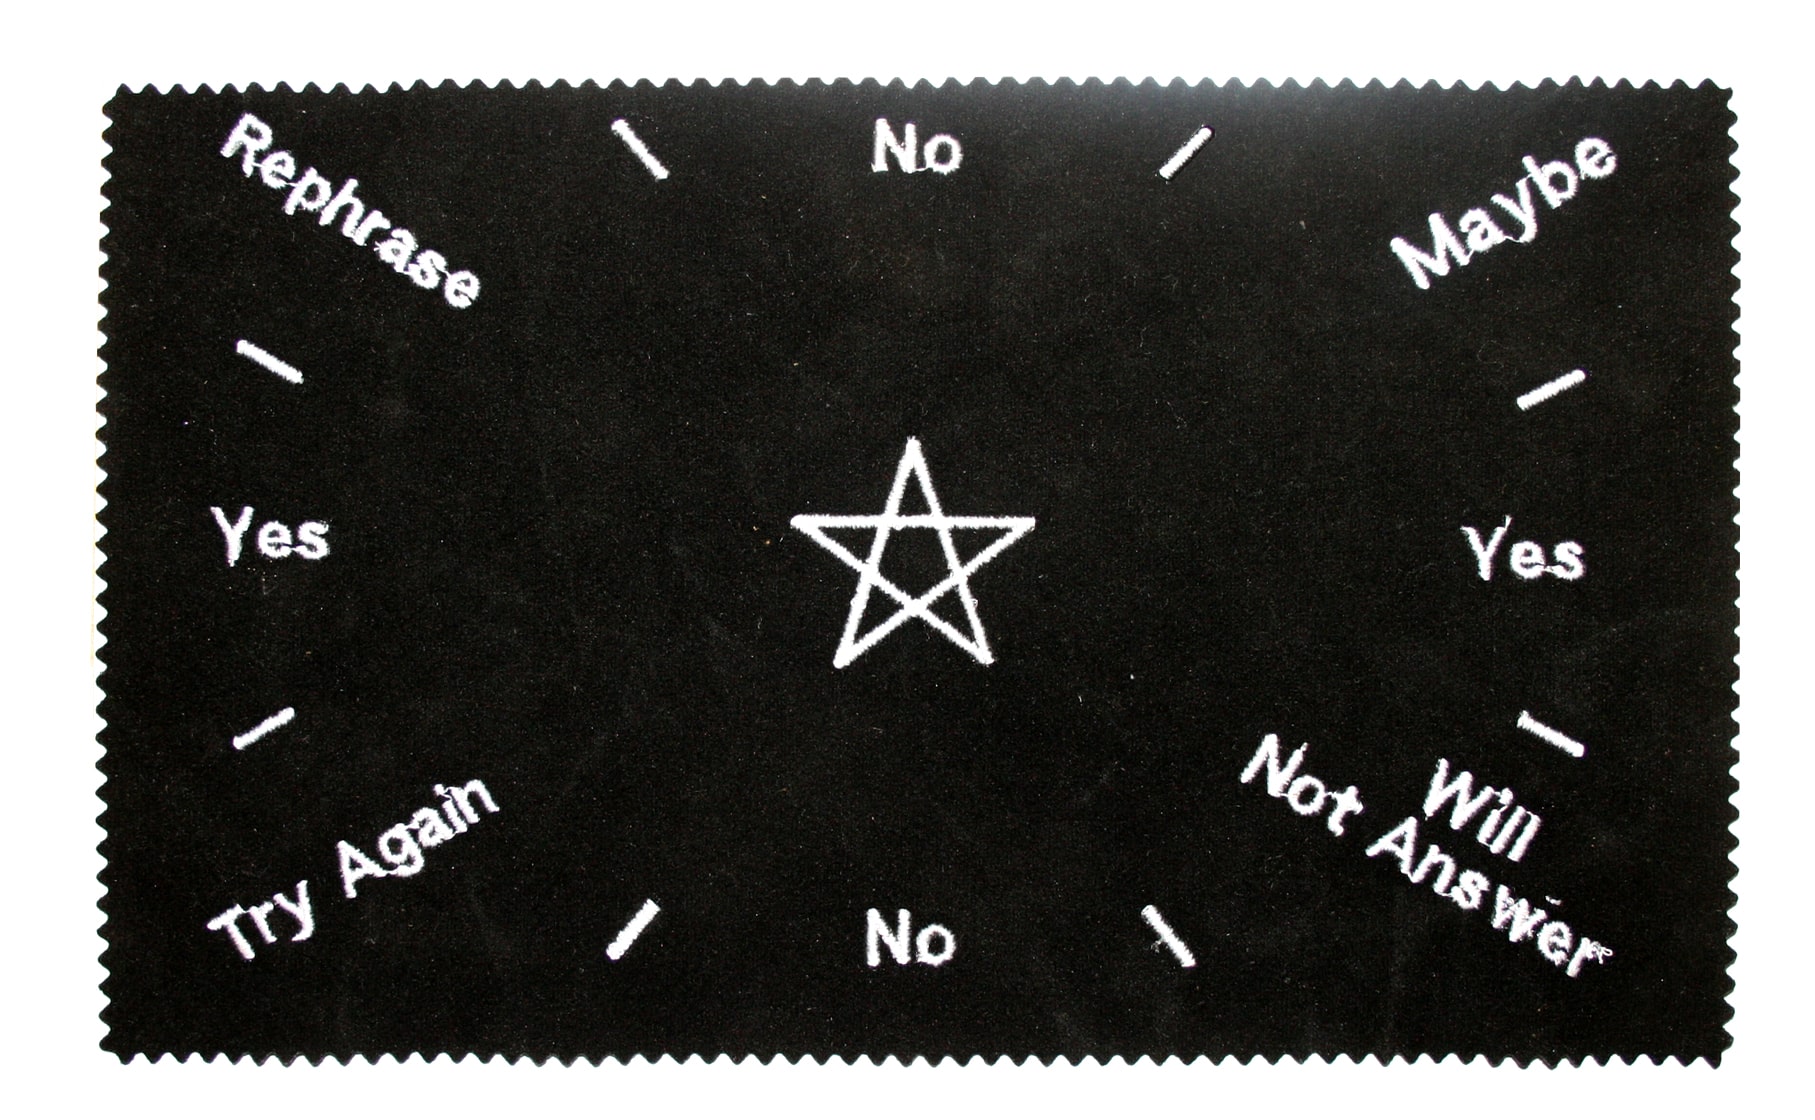 Pendel Mat Pentagram